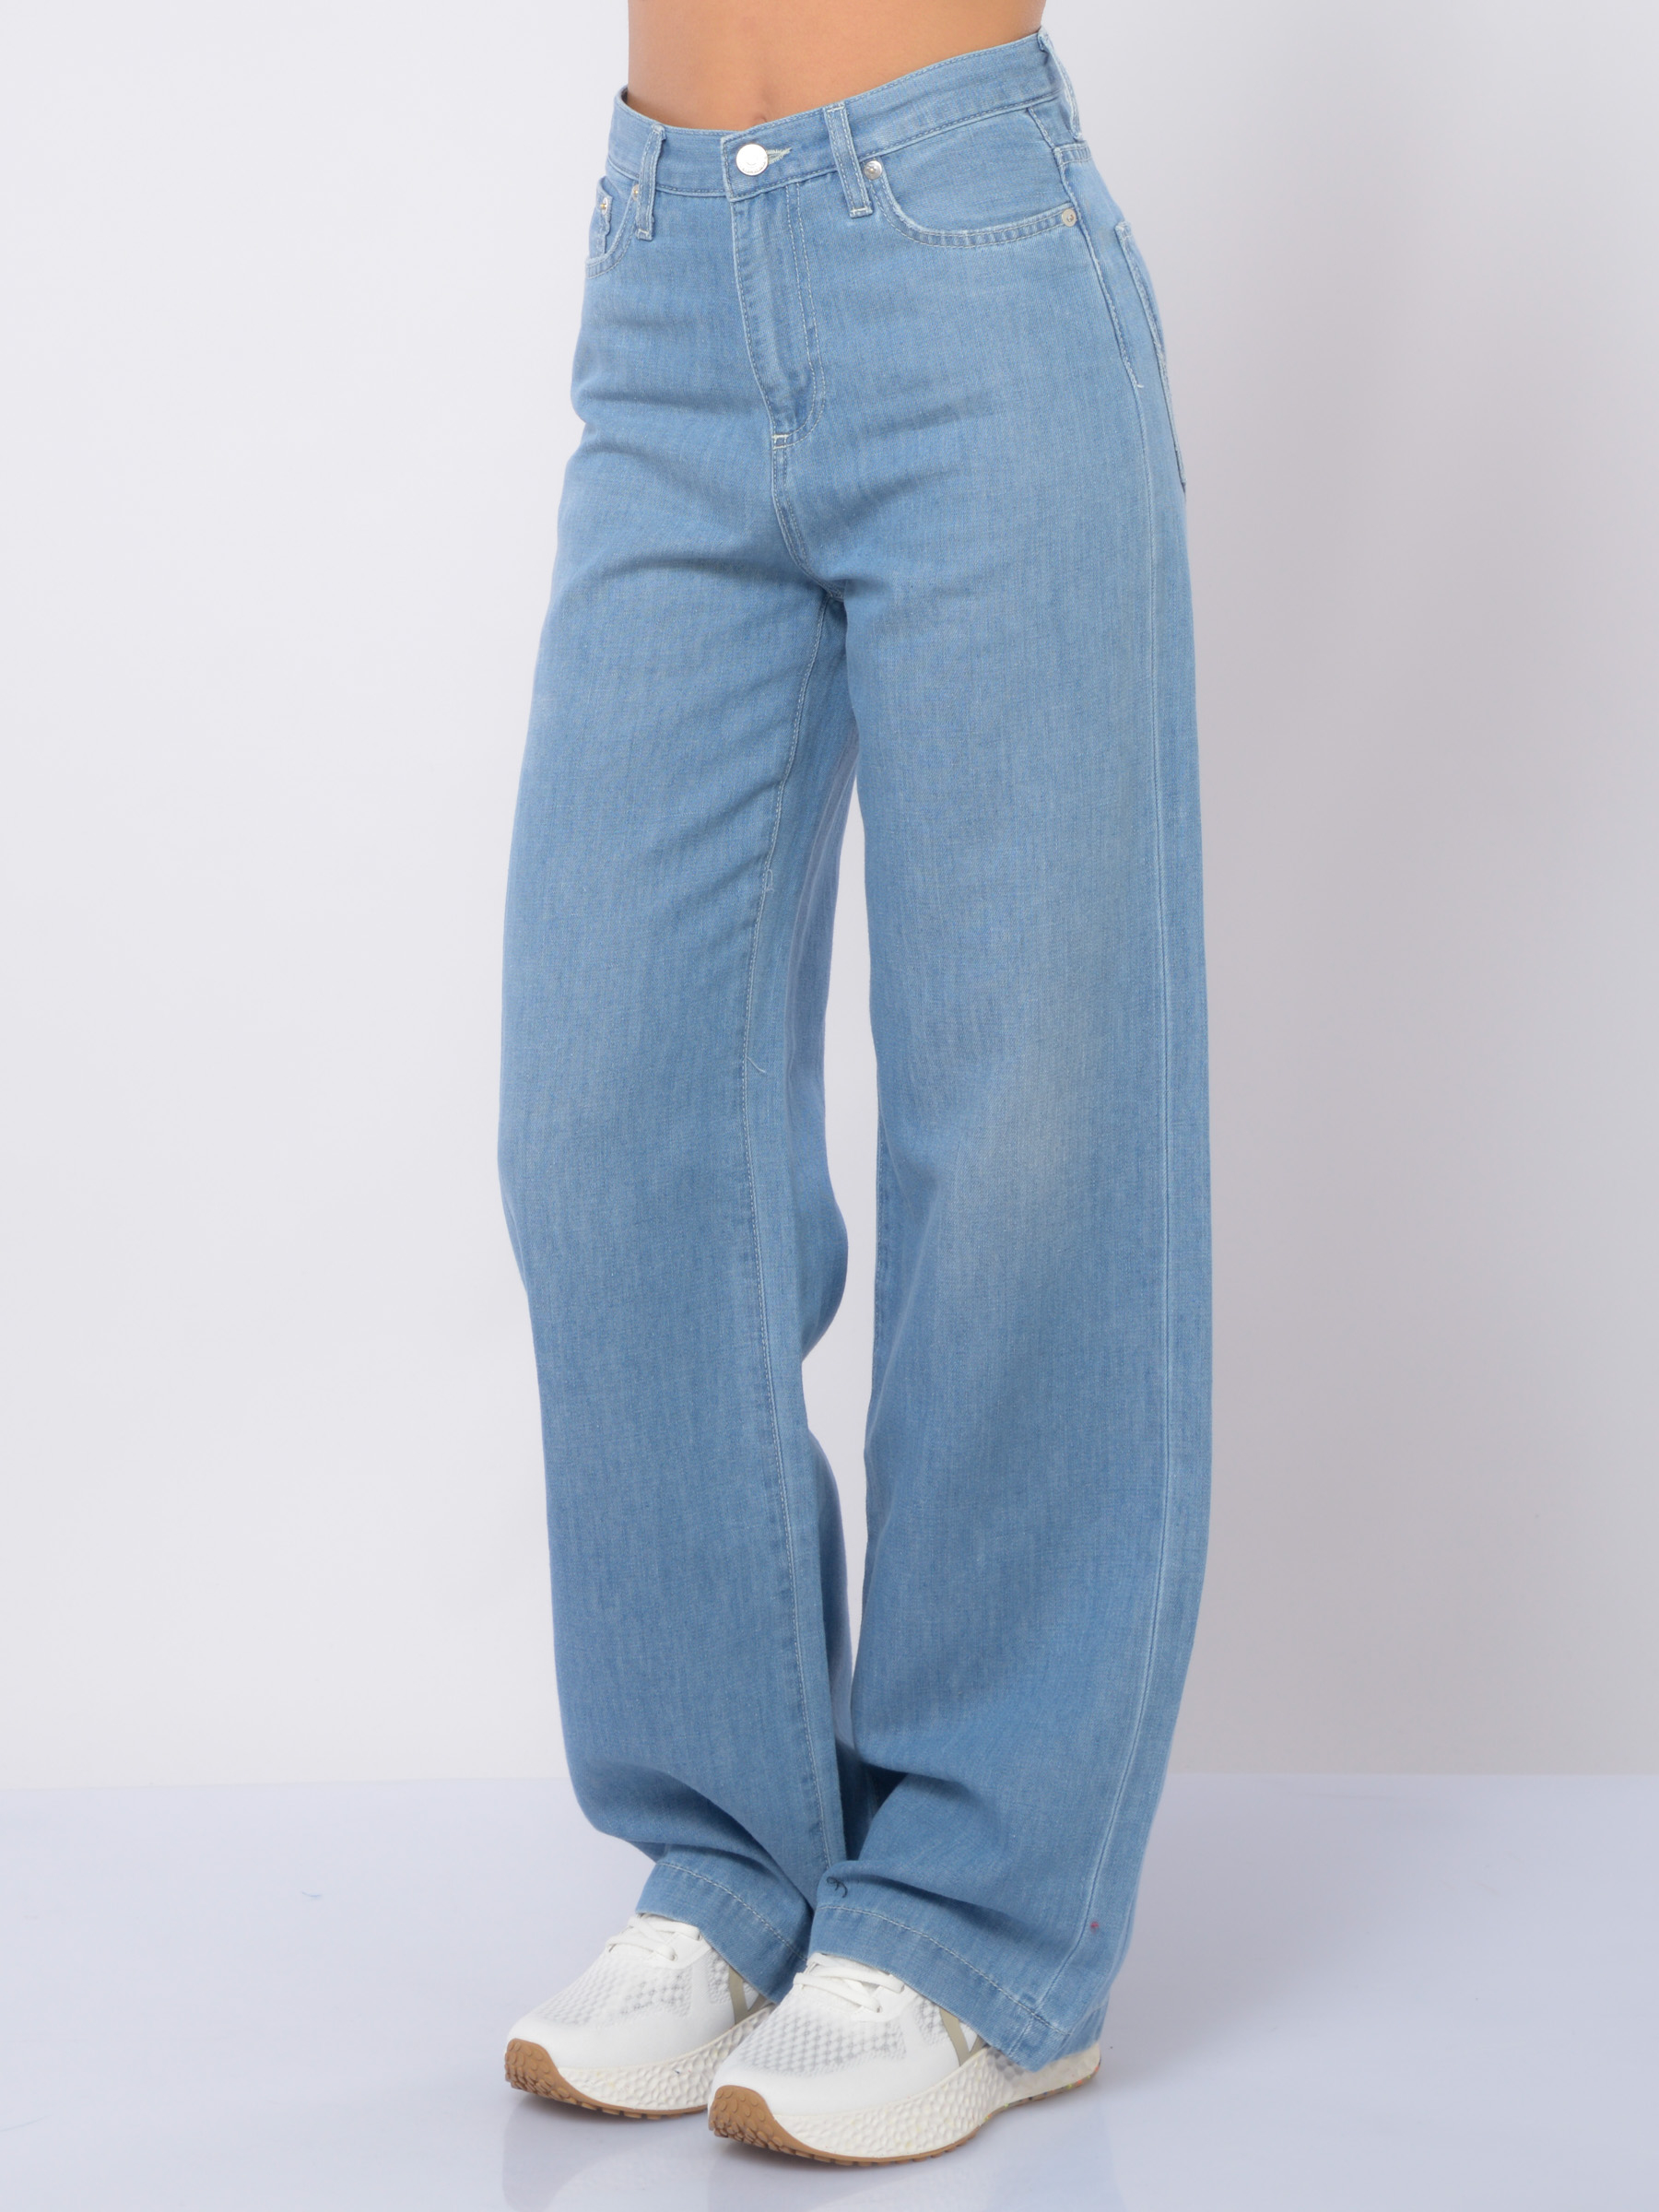 jeans da donna Roy Roger's ampio in cotone e lino